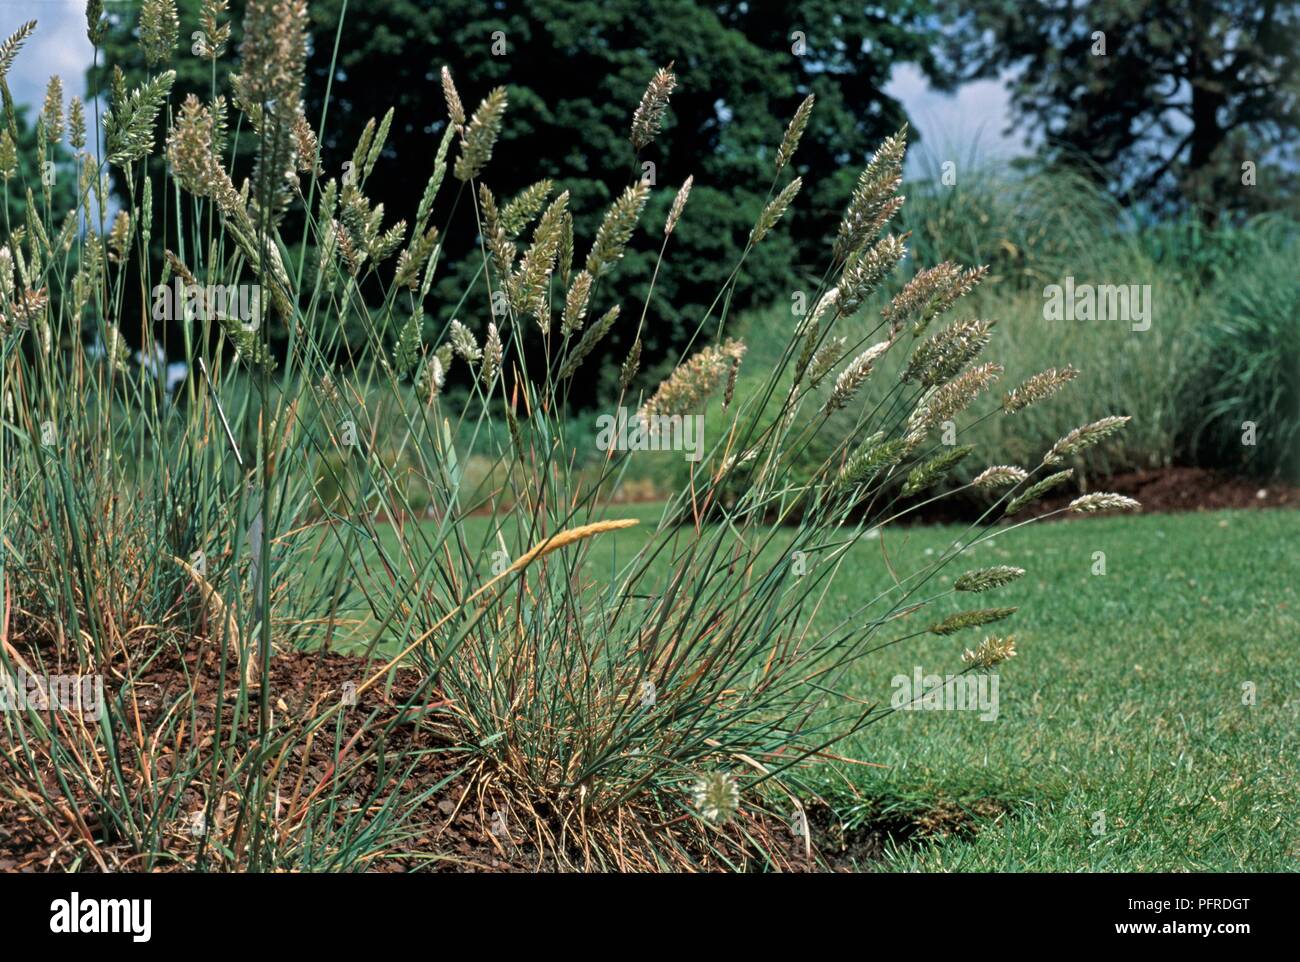 Koeleria glauca, a type of grass in a garden environment Stock Photo